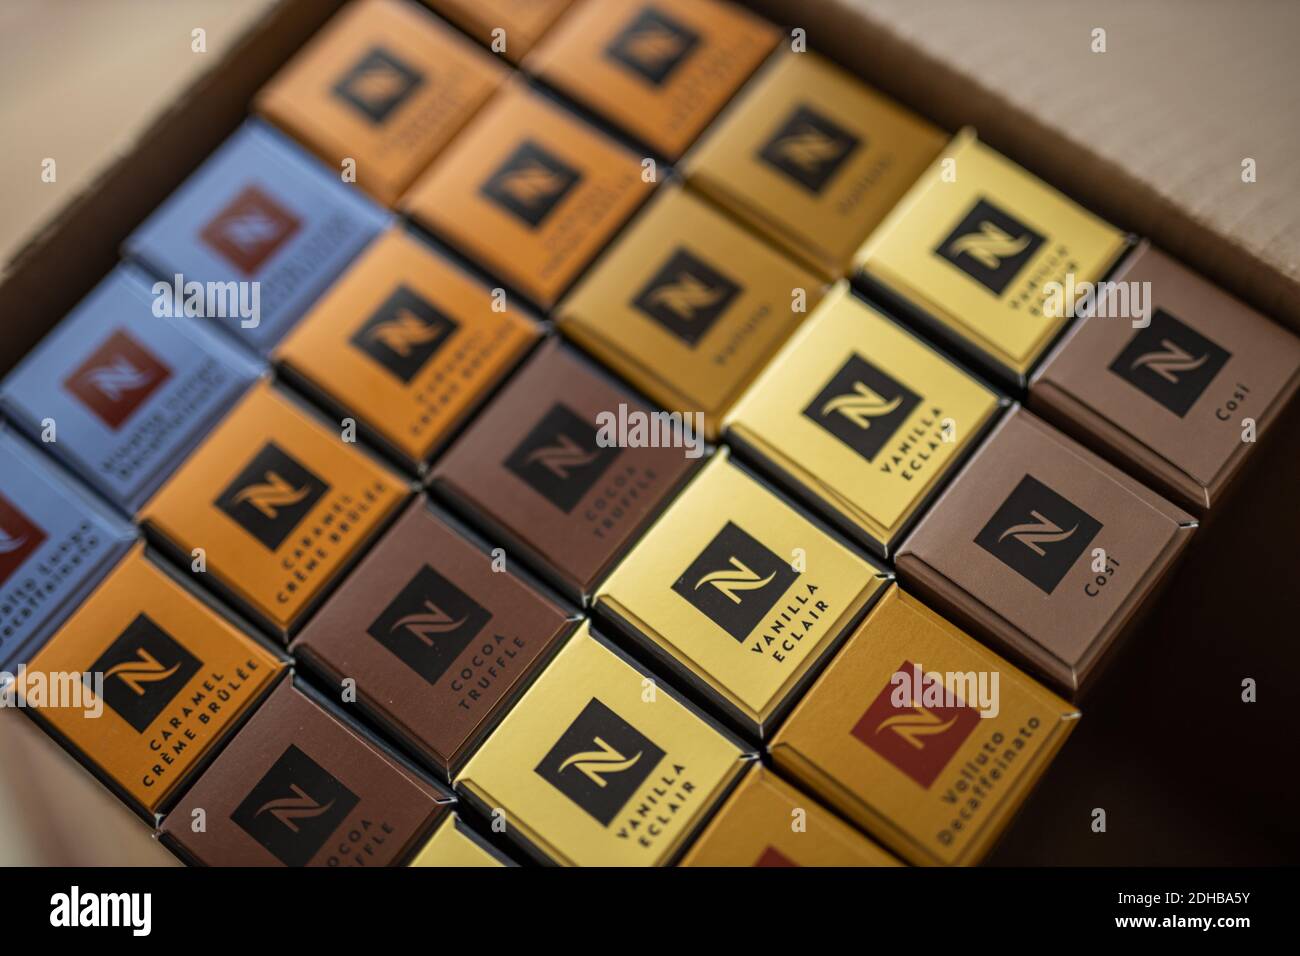 10.23.2019 : différentes capsules de café Nespresso livrées dans des boîtes  Nespresso. Café Nespresso, saveurs et goûts variés. Expédié à domicile  Photo Stock - Alamy